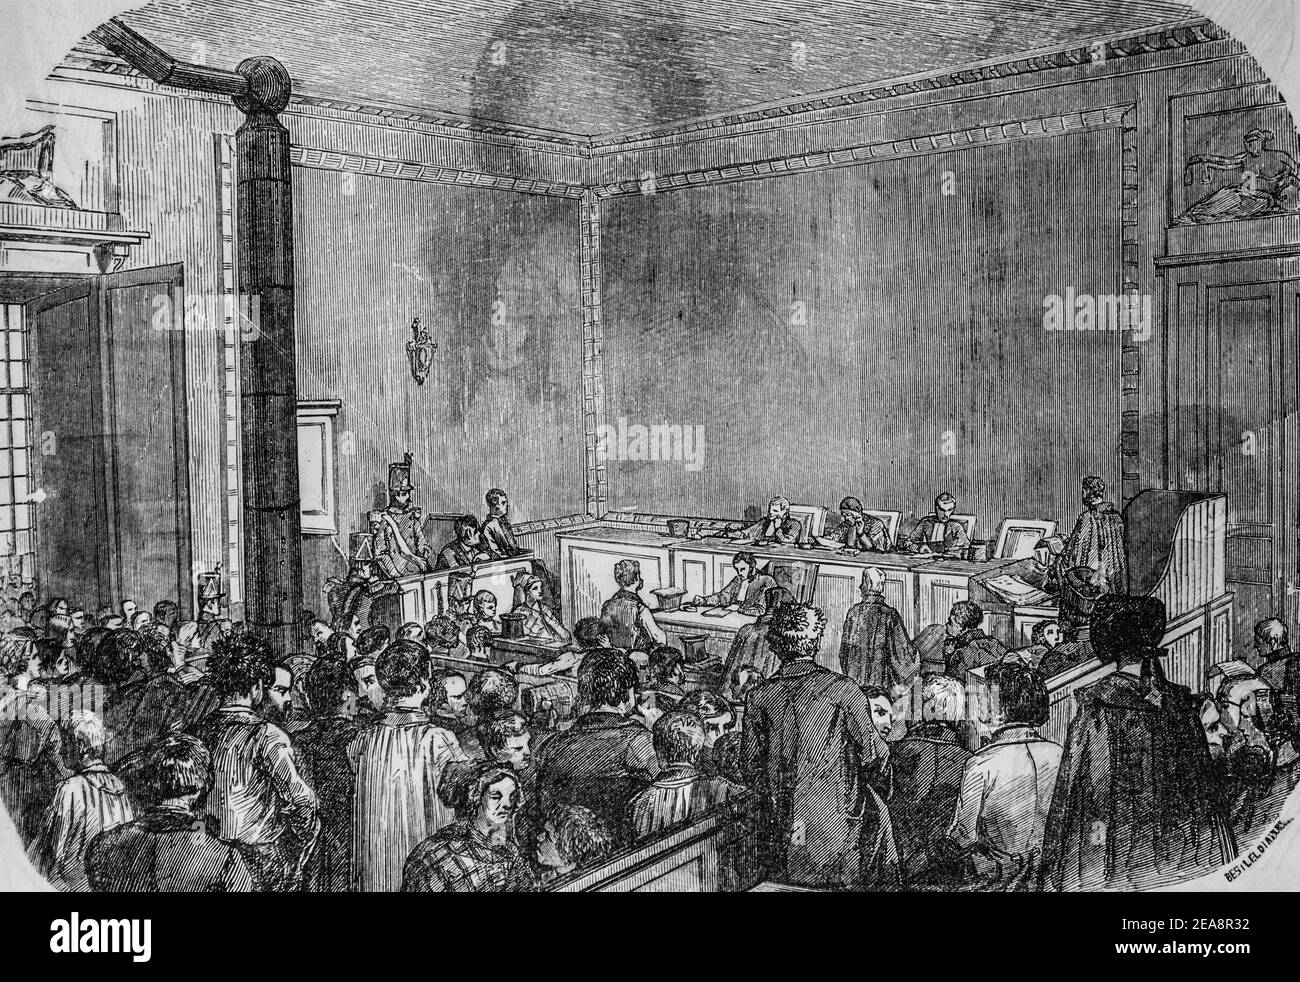 correction de police, tableau de paris par edmond texier,éditeur paulin et le chevalier 1852 Banque D'Images